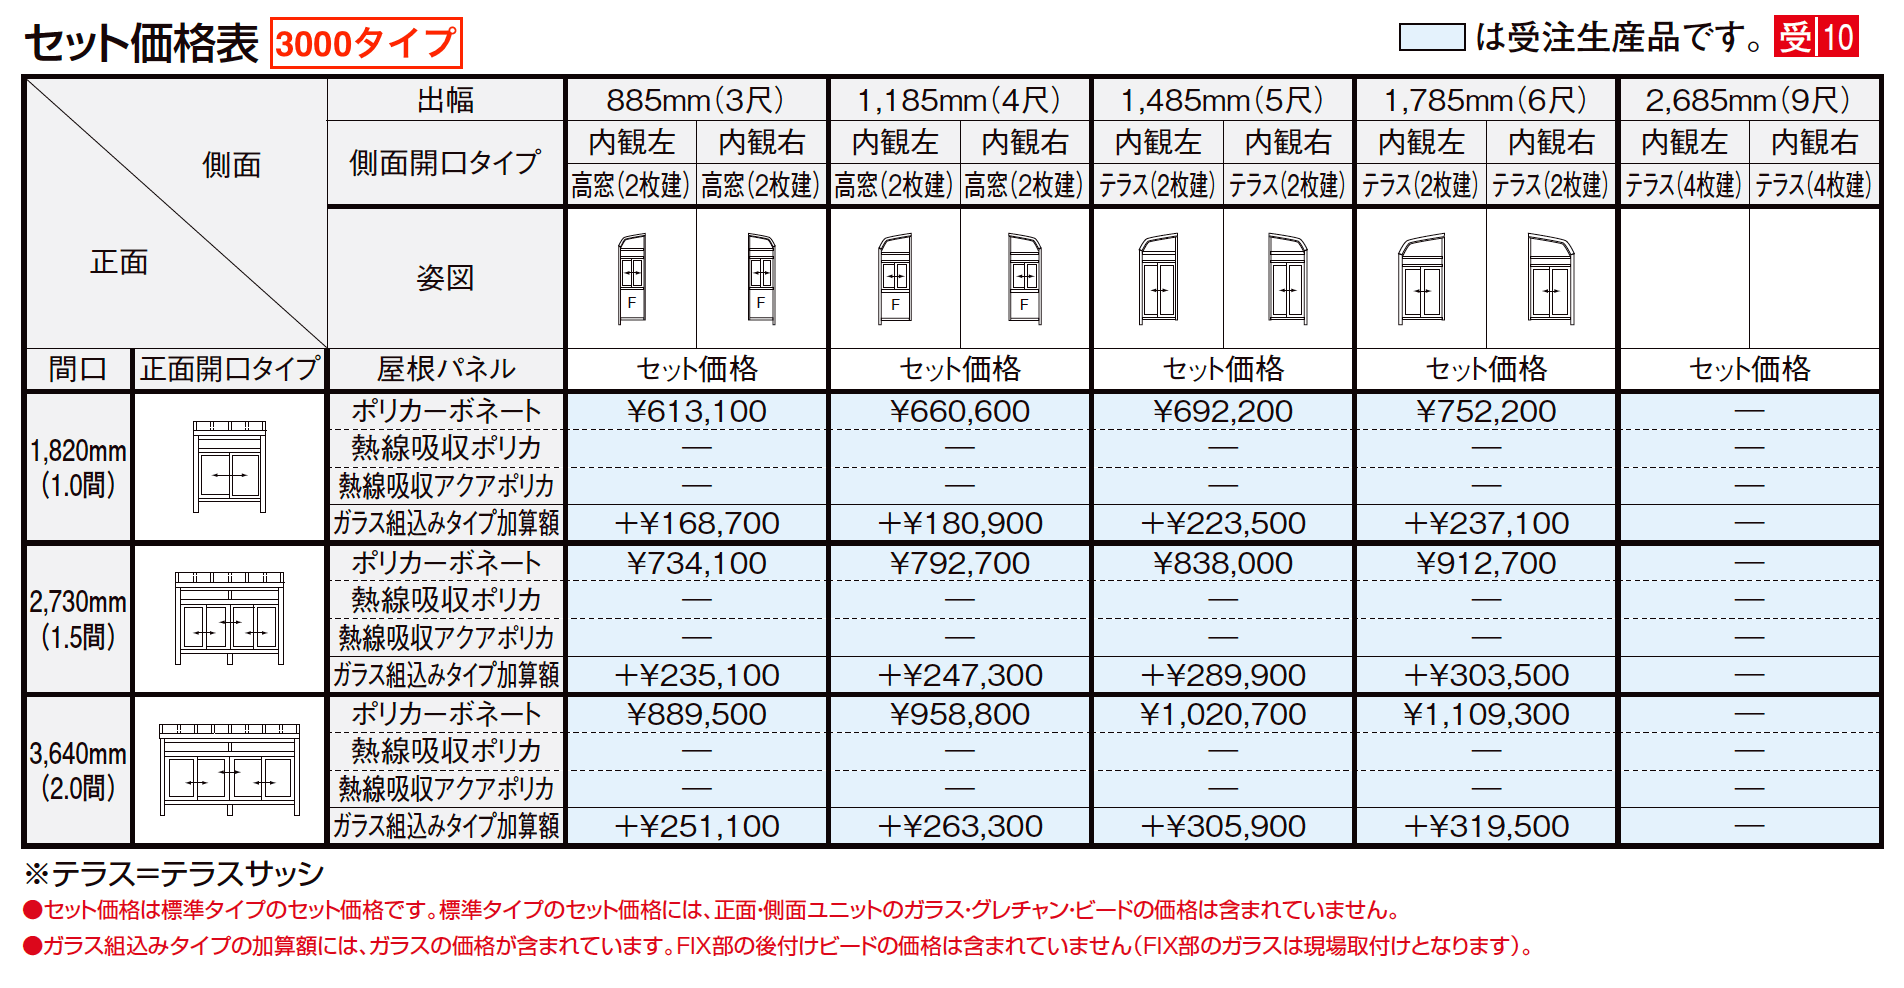 サニージュ R型 床納まり（ランマ付き）関東間【2023年版】_価格_5